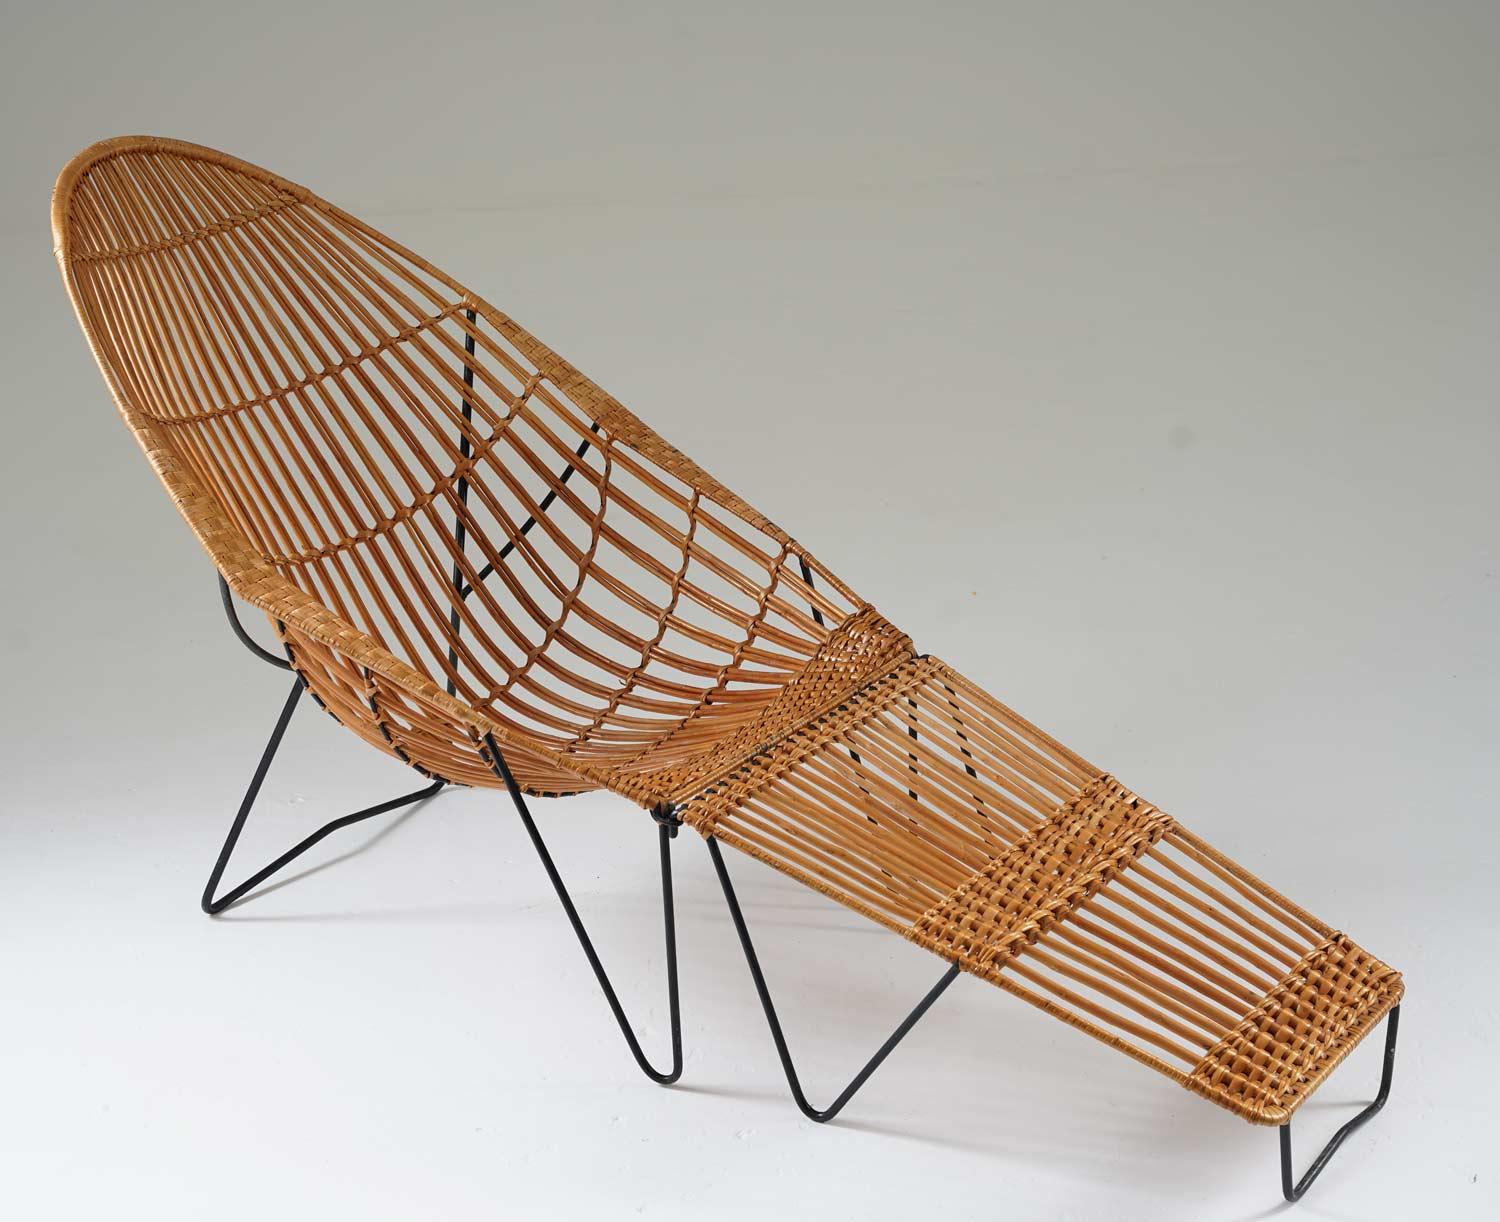 Seltener Stuhl aus Metall und Schilfrohr mit Ottomane, hergestellt in Skandinavien, 1950er Jahre. 
Mit seiner gut verarbeiteten Konstruktion und seinem spektakulären Design ist dieser Stuhl ein Blickfang in jedem Raum. Passt perfekt zu einem